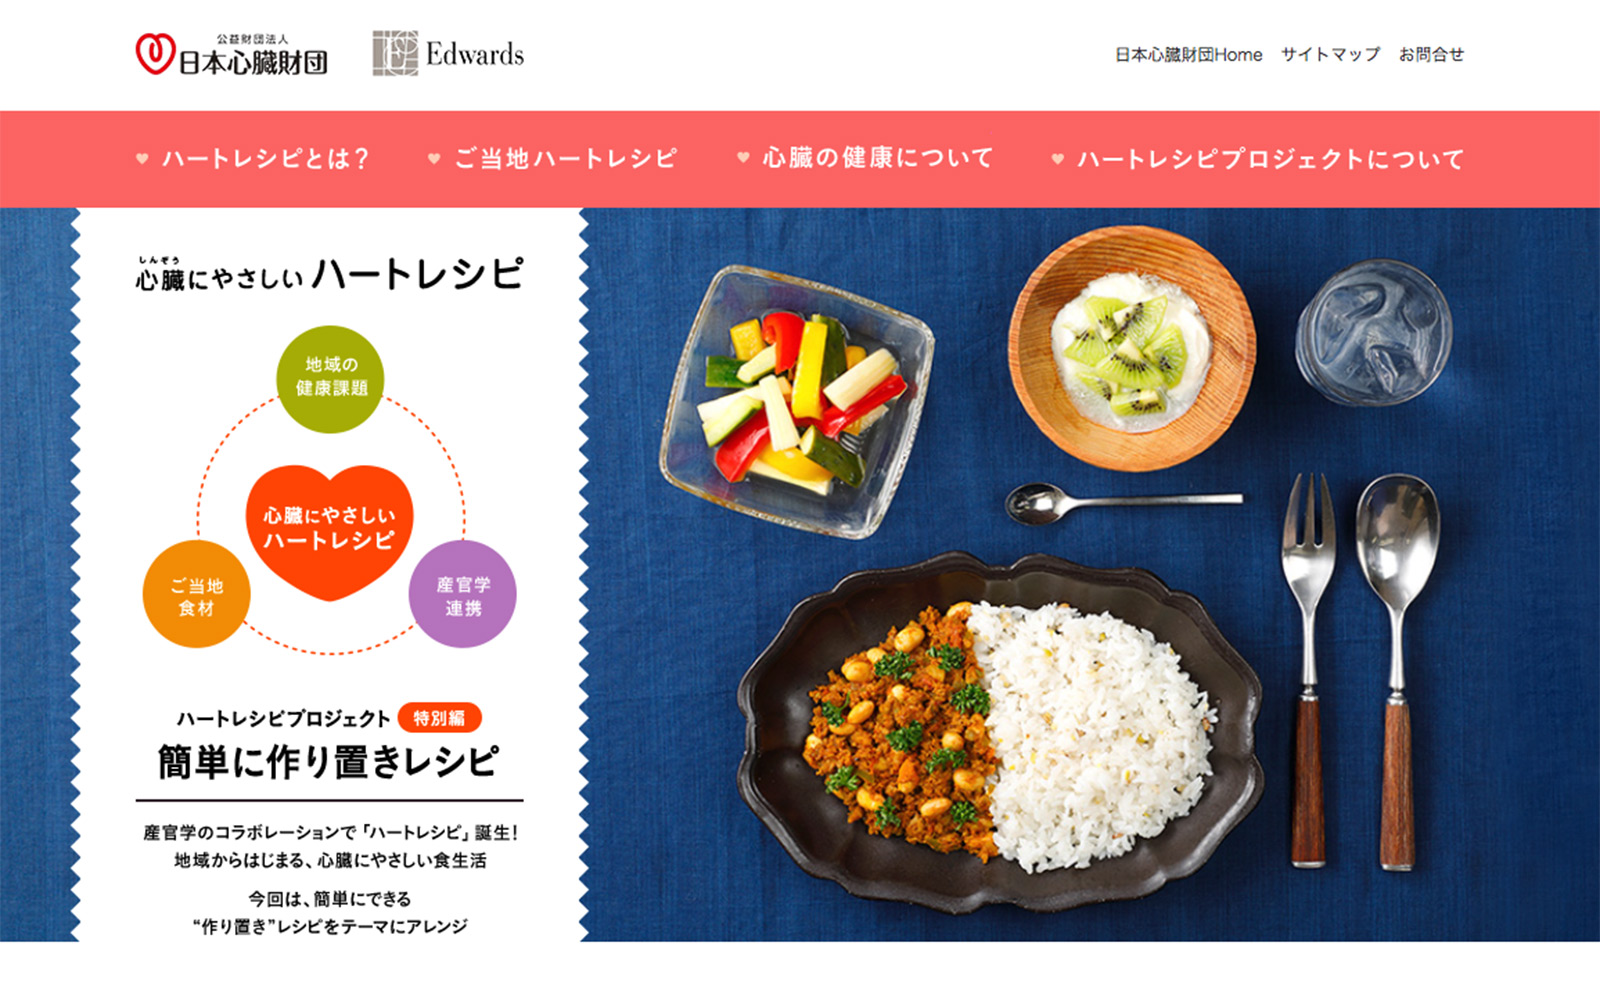 心臓にやさしいハートレシピは、日本心臓財団のホームページですべてのメニューが公開されています。ぜひご覧ください。